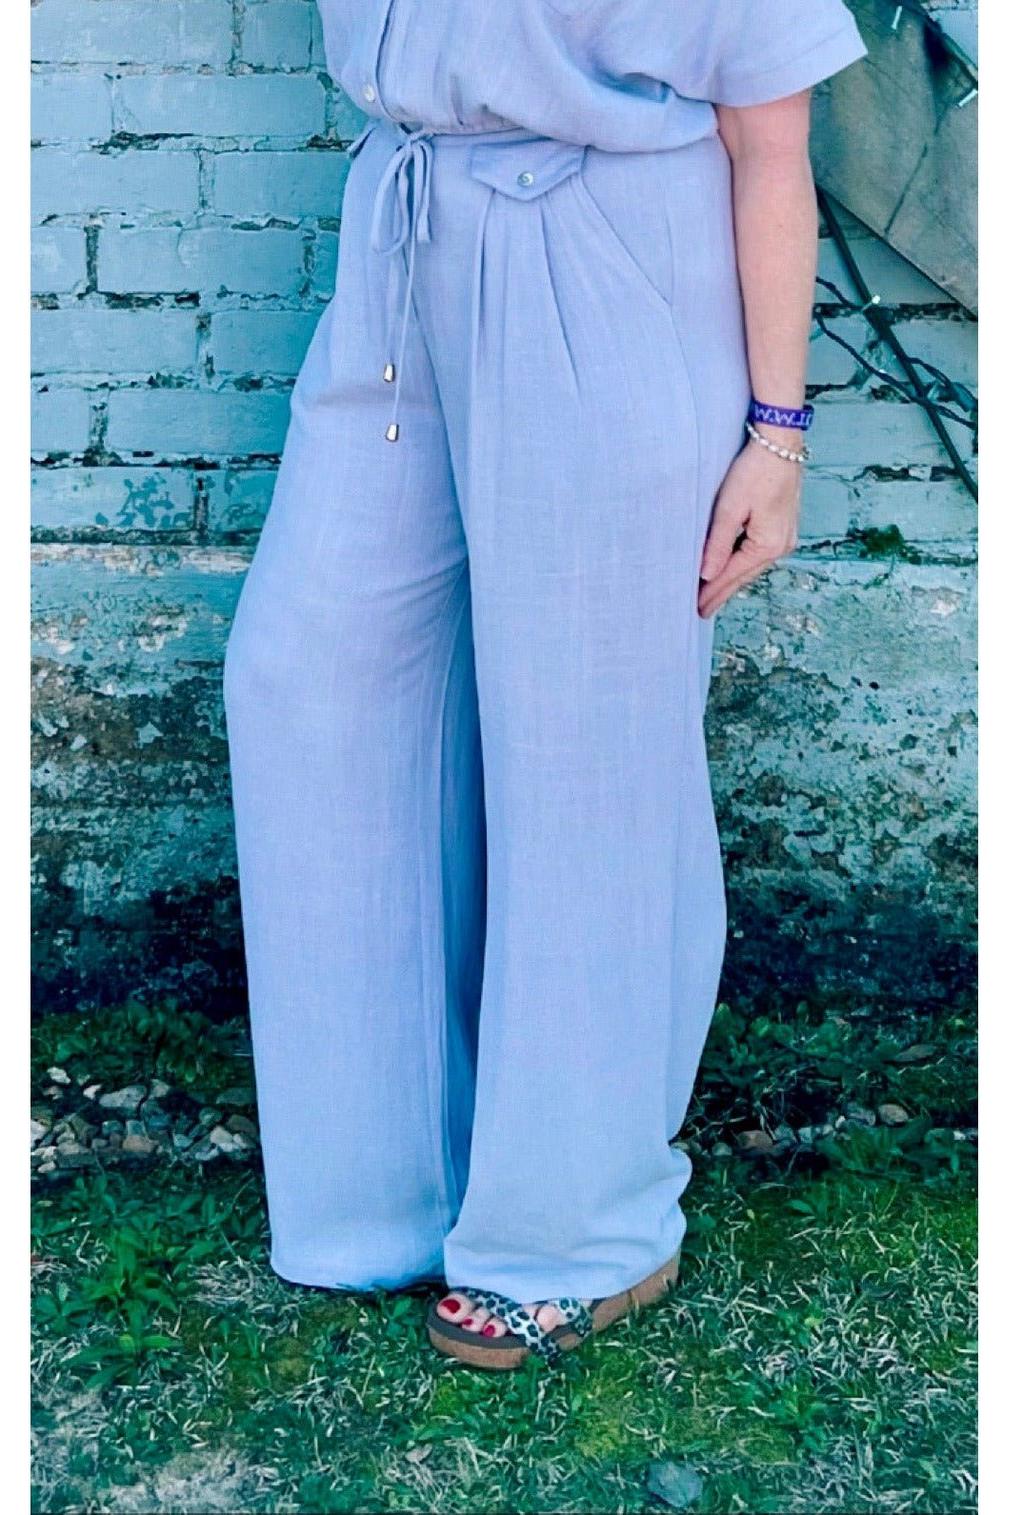 Allie Rose Linen Blend Flowing Dress Pants - Vintage Dragonfly Boutique